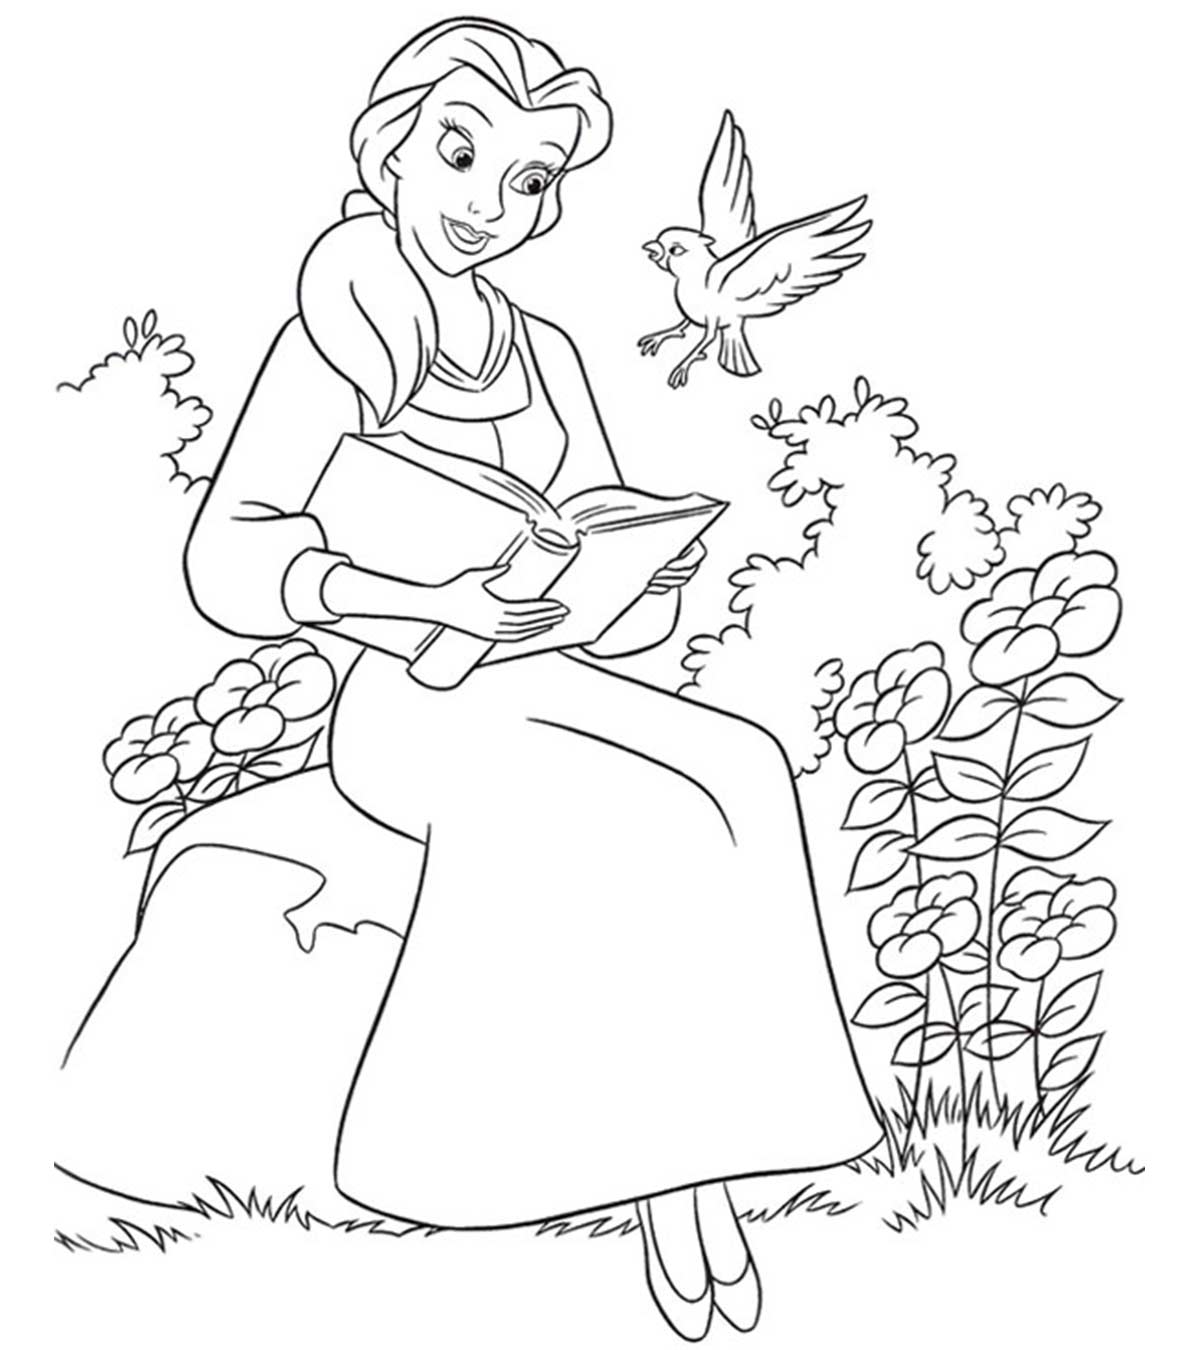 Belle liest ein Buch aus „Die Schöne und das Biest“.